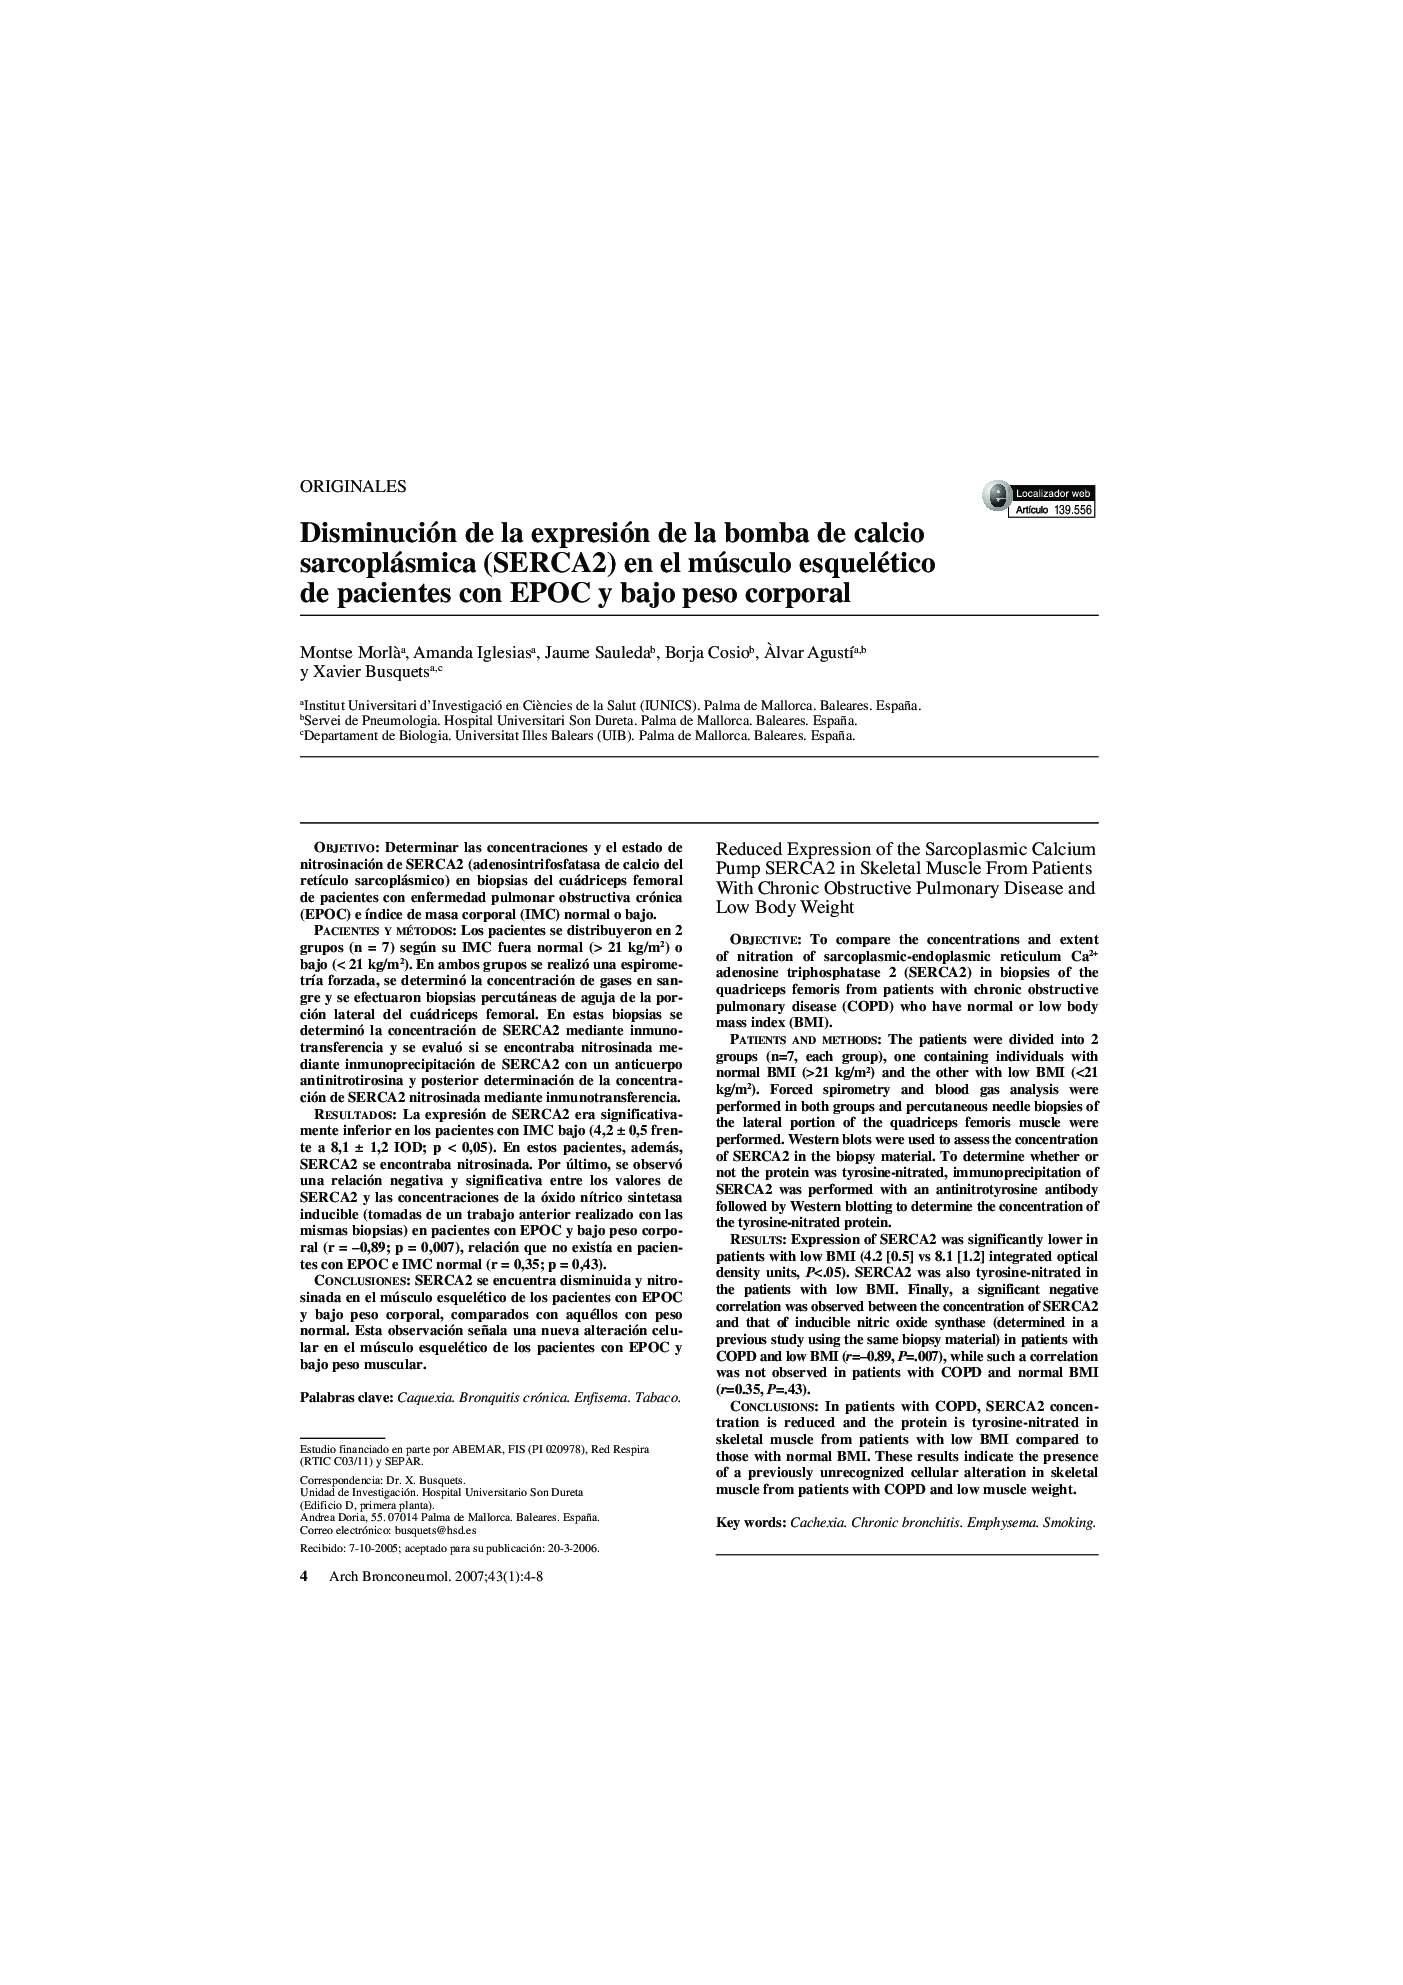 Disminución de la expresión de la bomba de calcio sarcoplásmica (SERCA2) en el músculo esquelético de pacientes con EPOC y bajo peso corporal